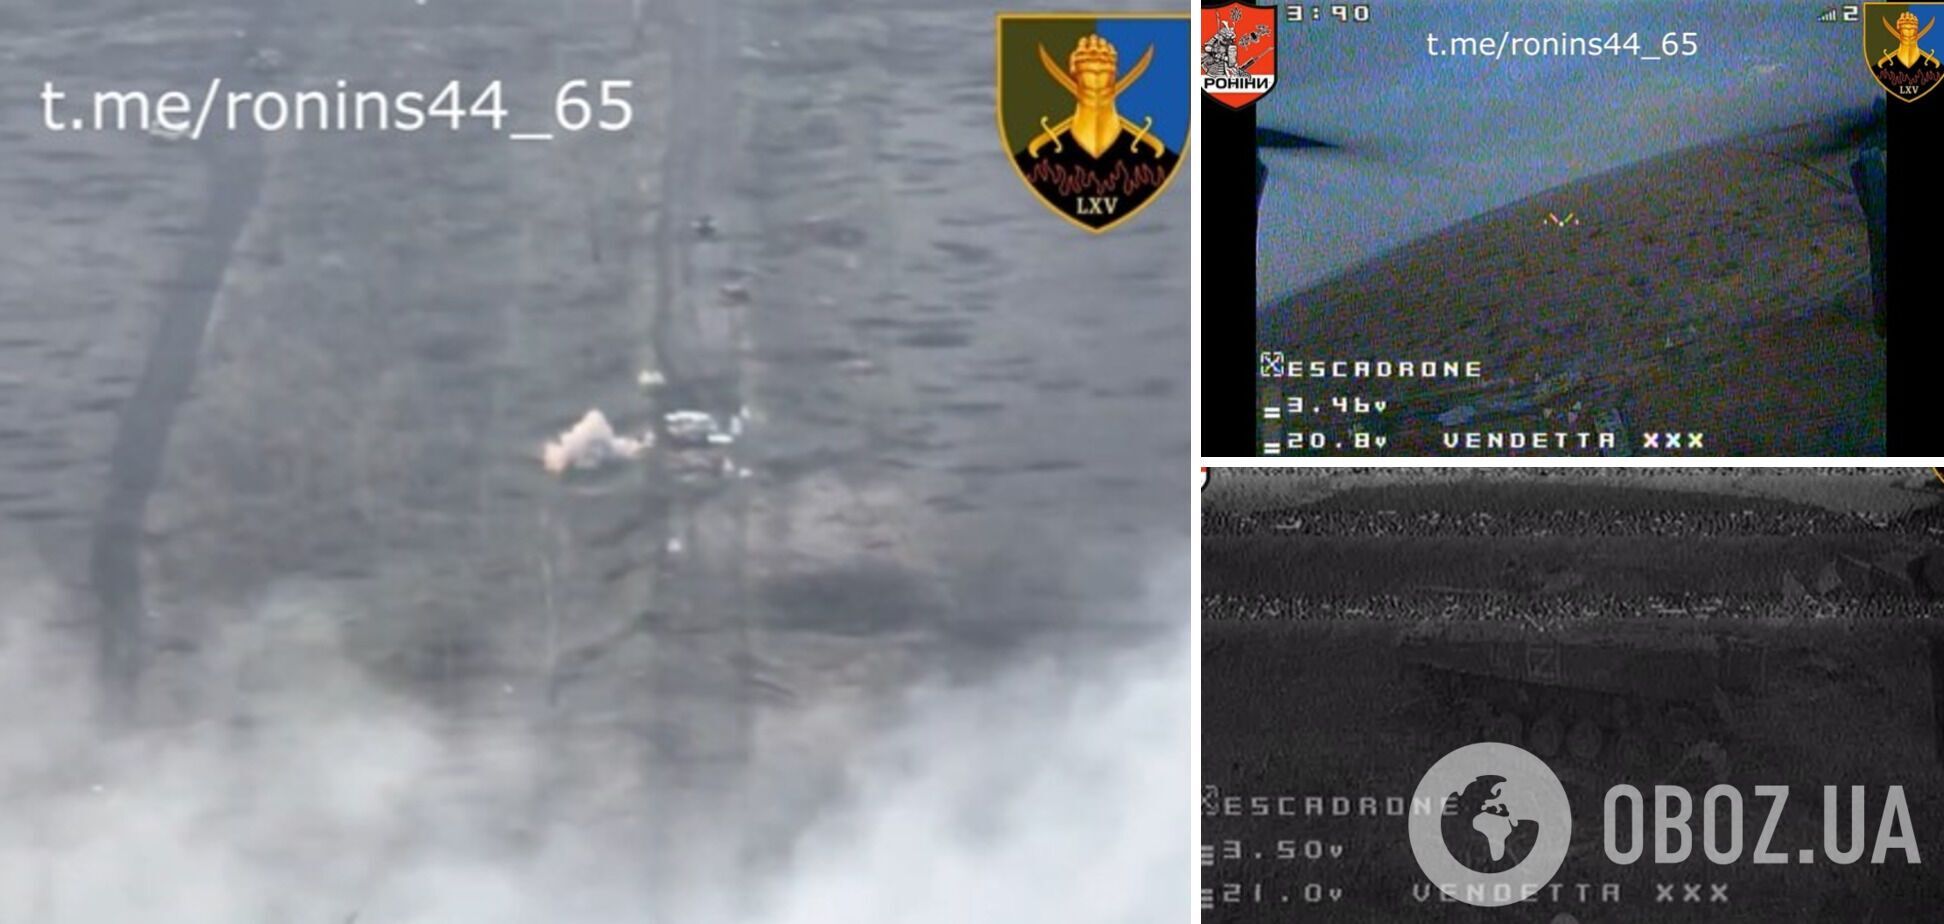 Украинские воины отбили банзай-атаку оккупантов в окрестностях Роботиного. Видео